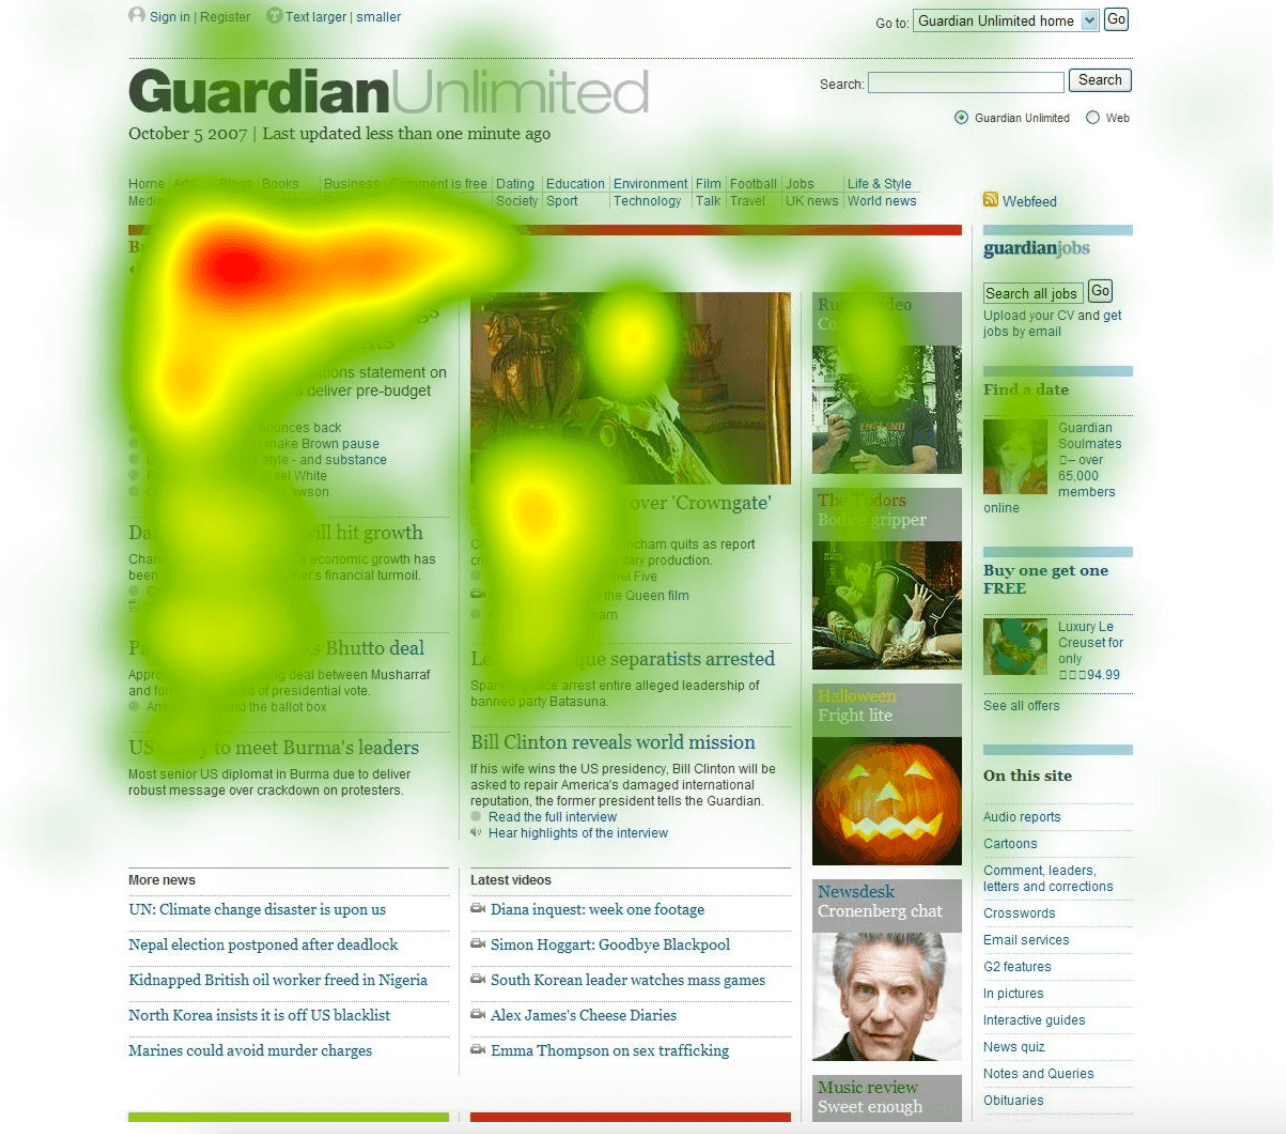 Captură de ecran a hărții termice de la Guardian care arată cea mai mare activitate aproape de începutul articolului